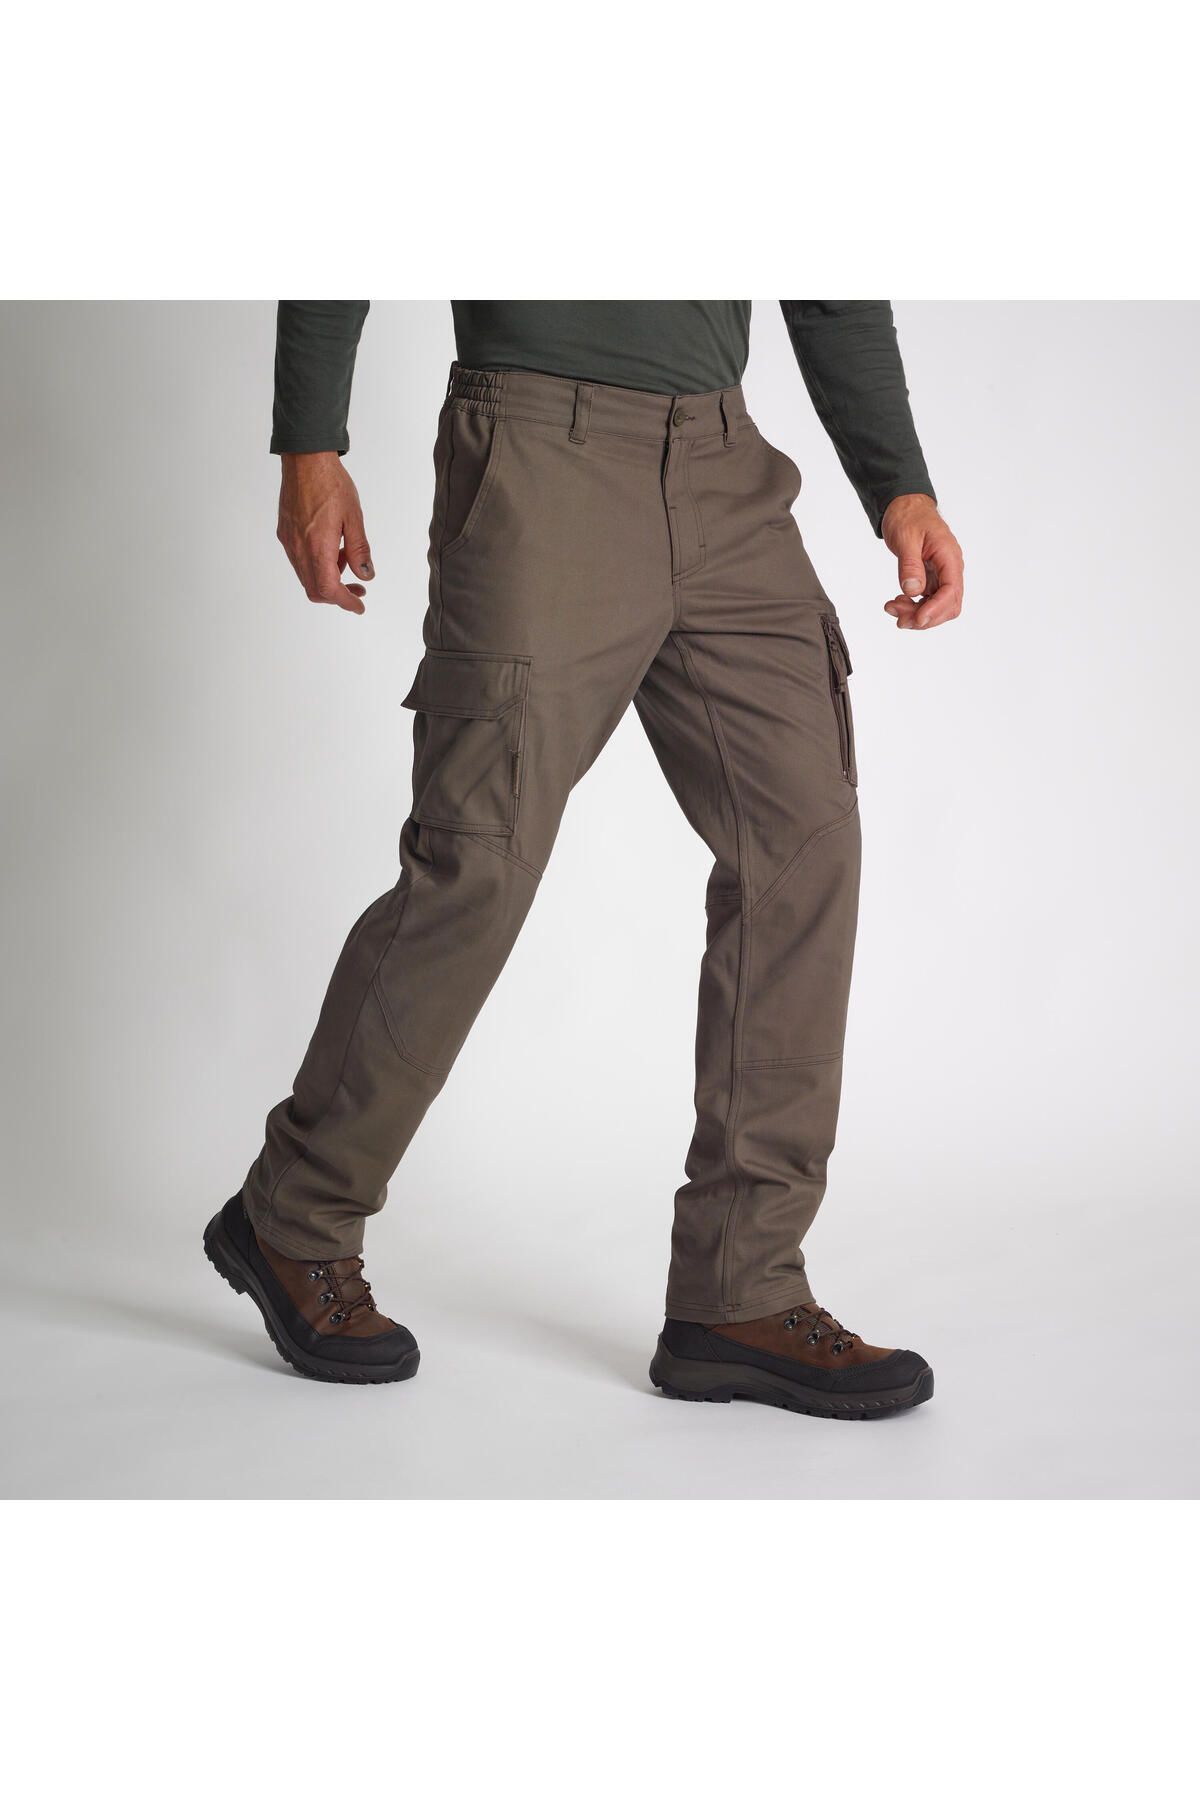 Decathlon Erkek Outdoor Pantolon - Avcılık ve Doğa Gözlemi - Kahverengi - 520